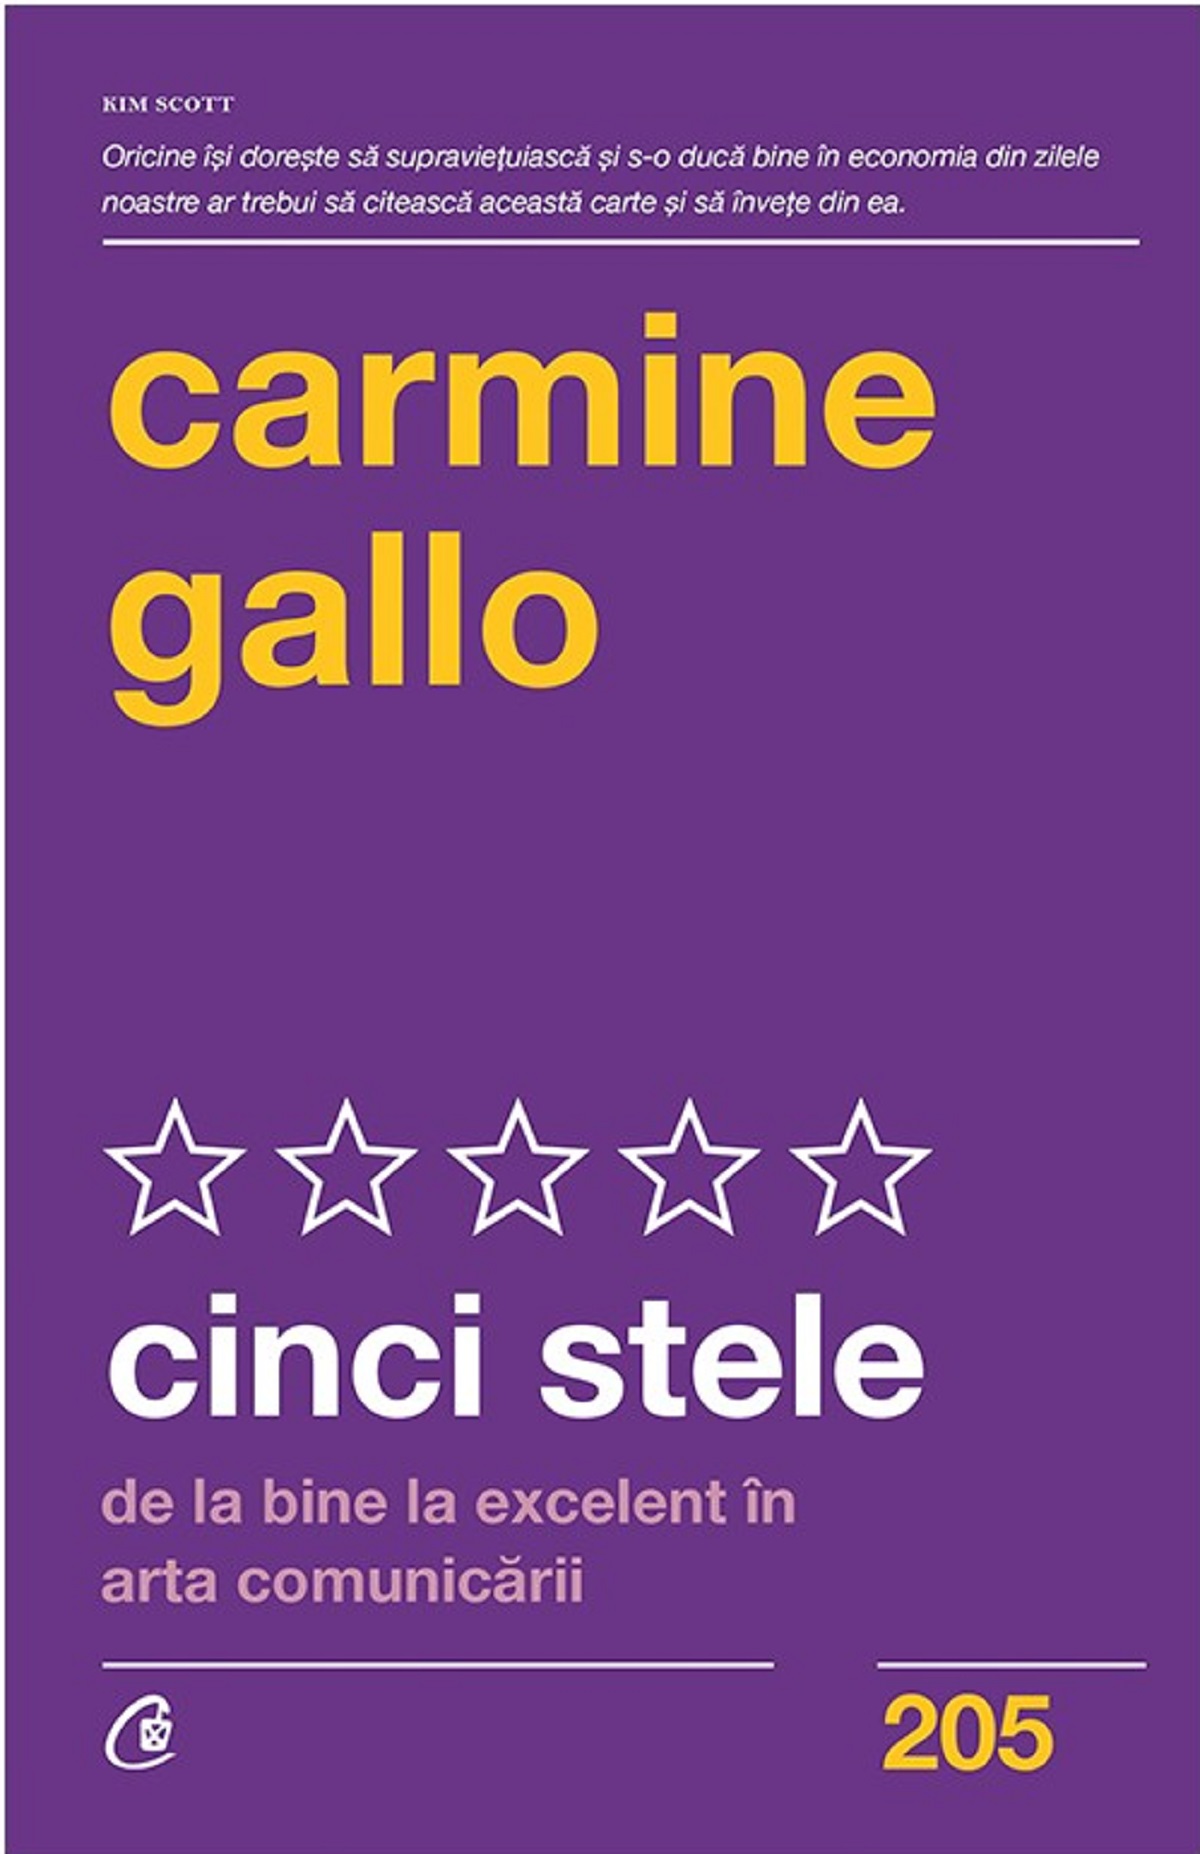 Cinci stele - Carmine Gallo